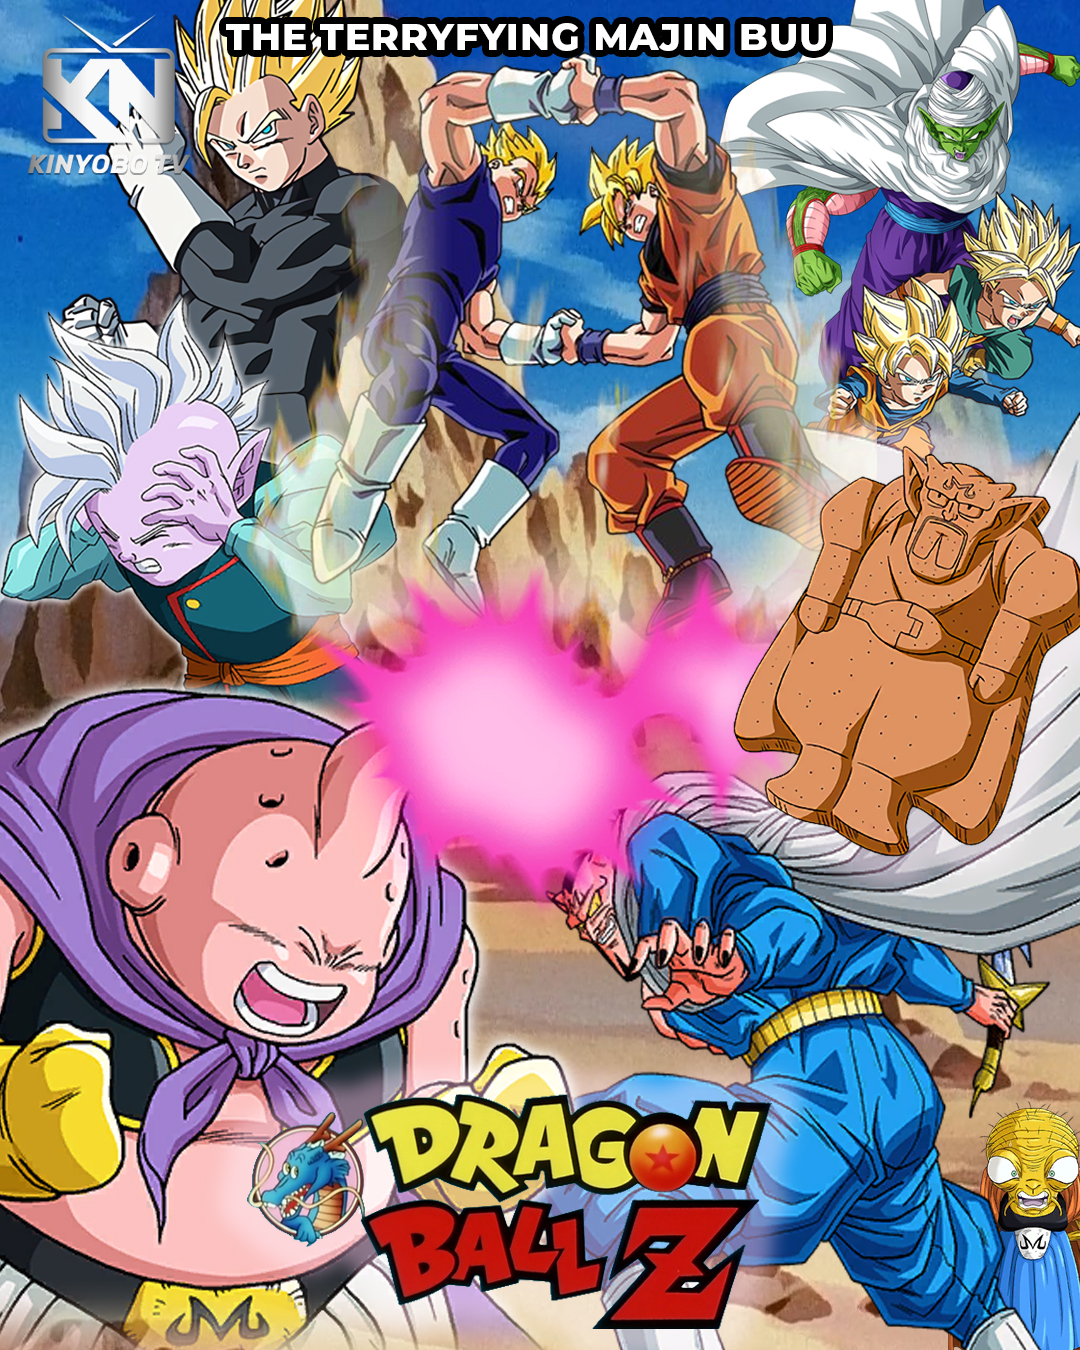 Dragon Ball Z Majin Buu Saga Arc 4 Folder Icon by ShaolongSan on DeviantArt